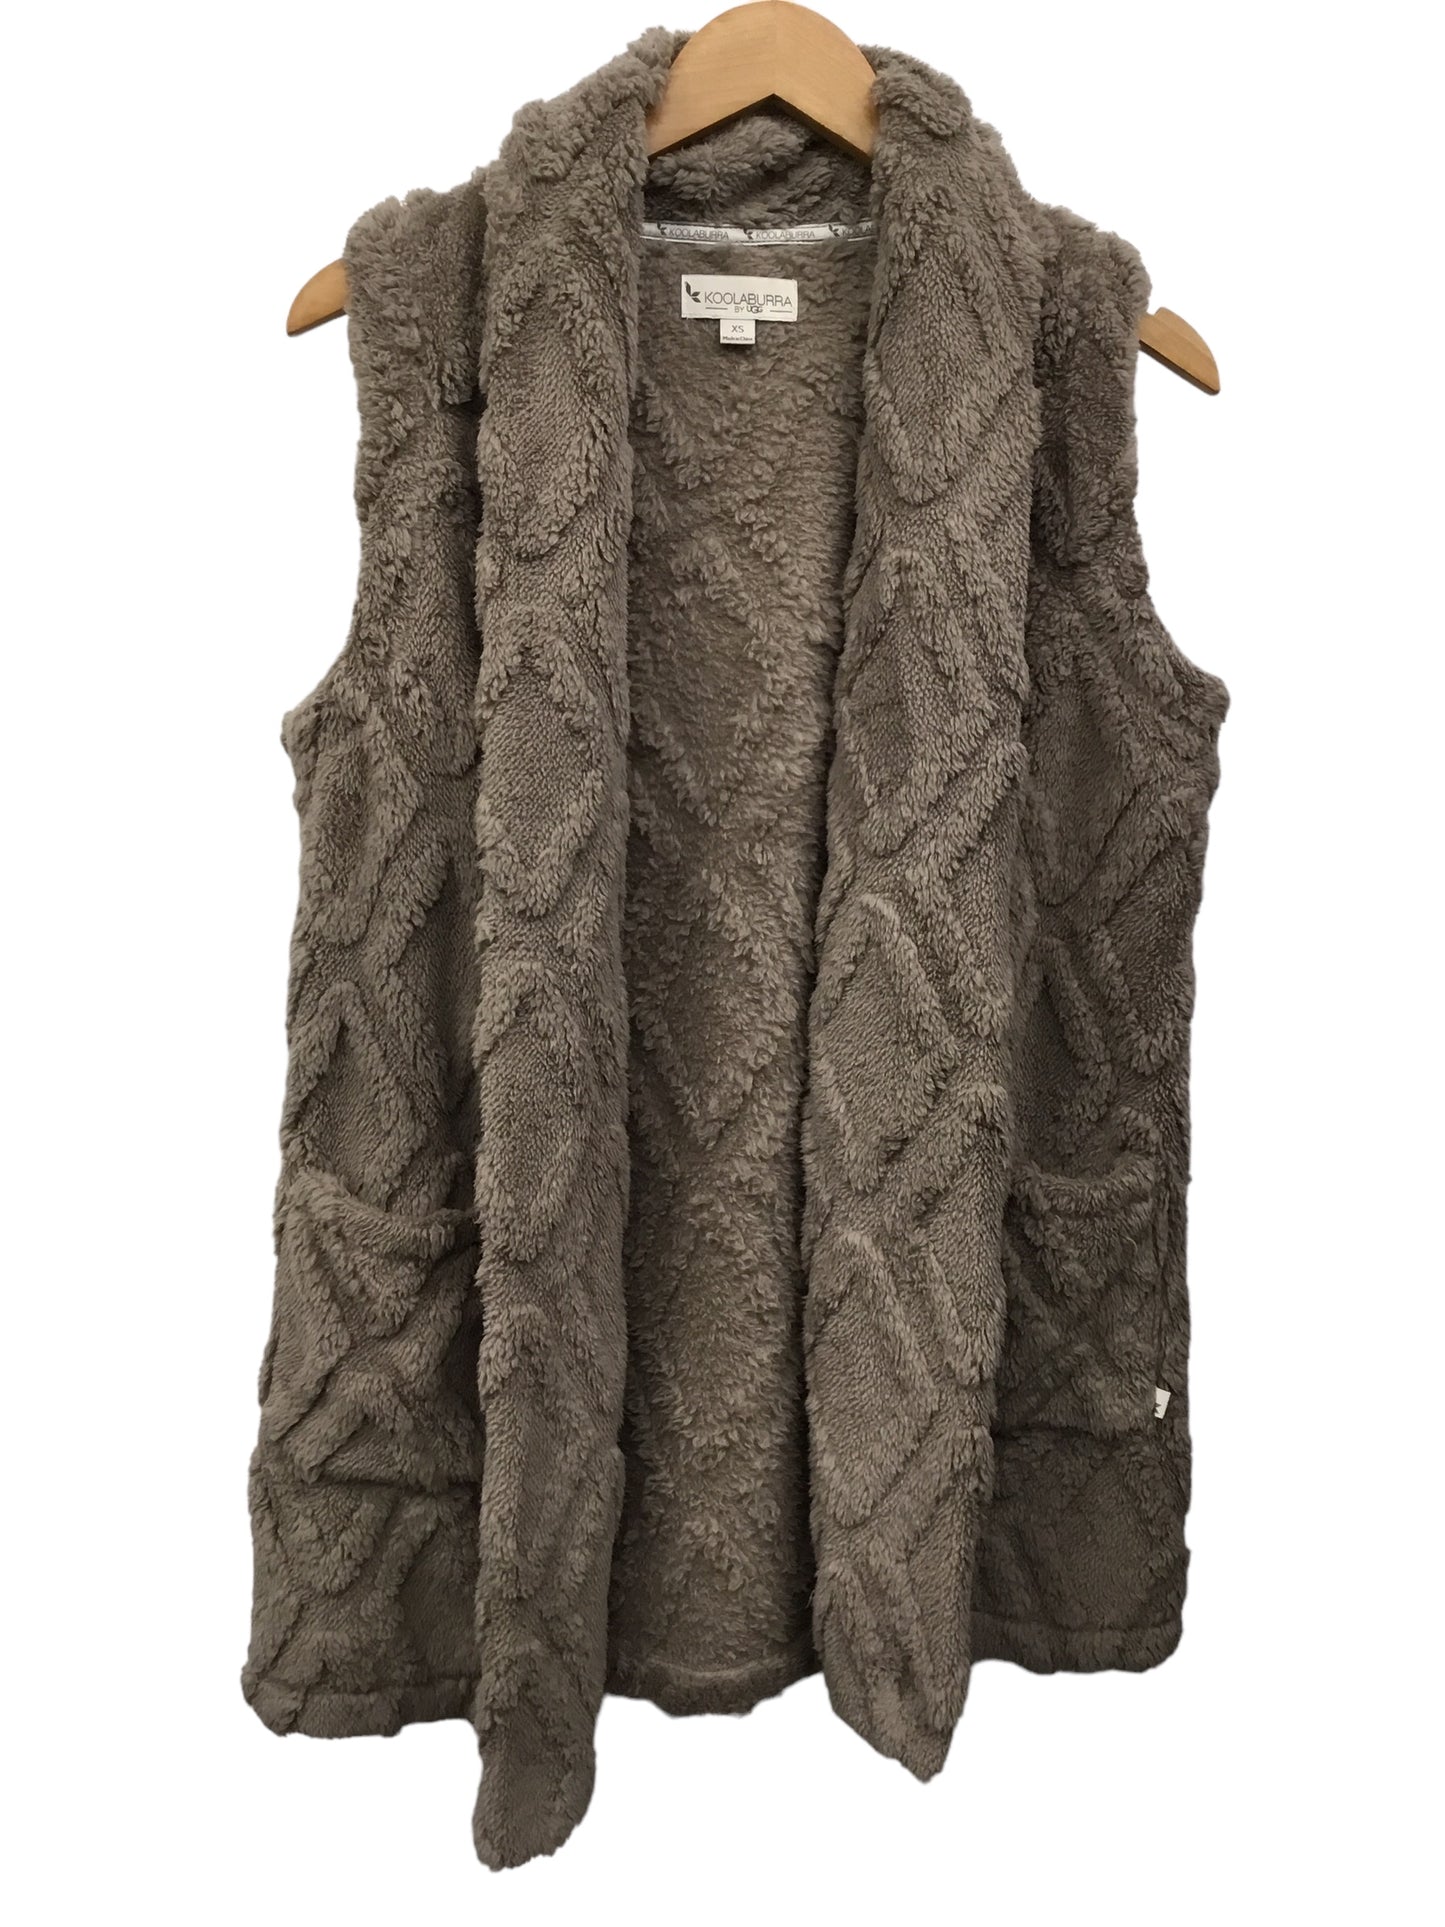 Vest Fleece By Koolaburra By Ugg  Size: Xs